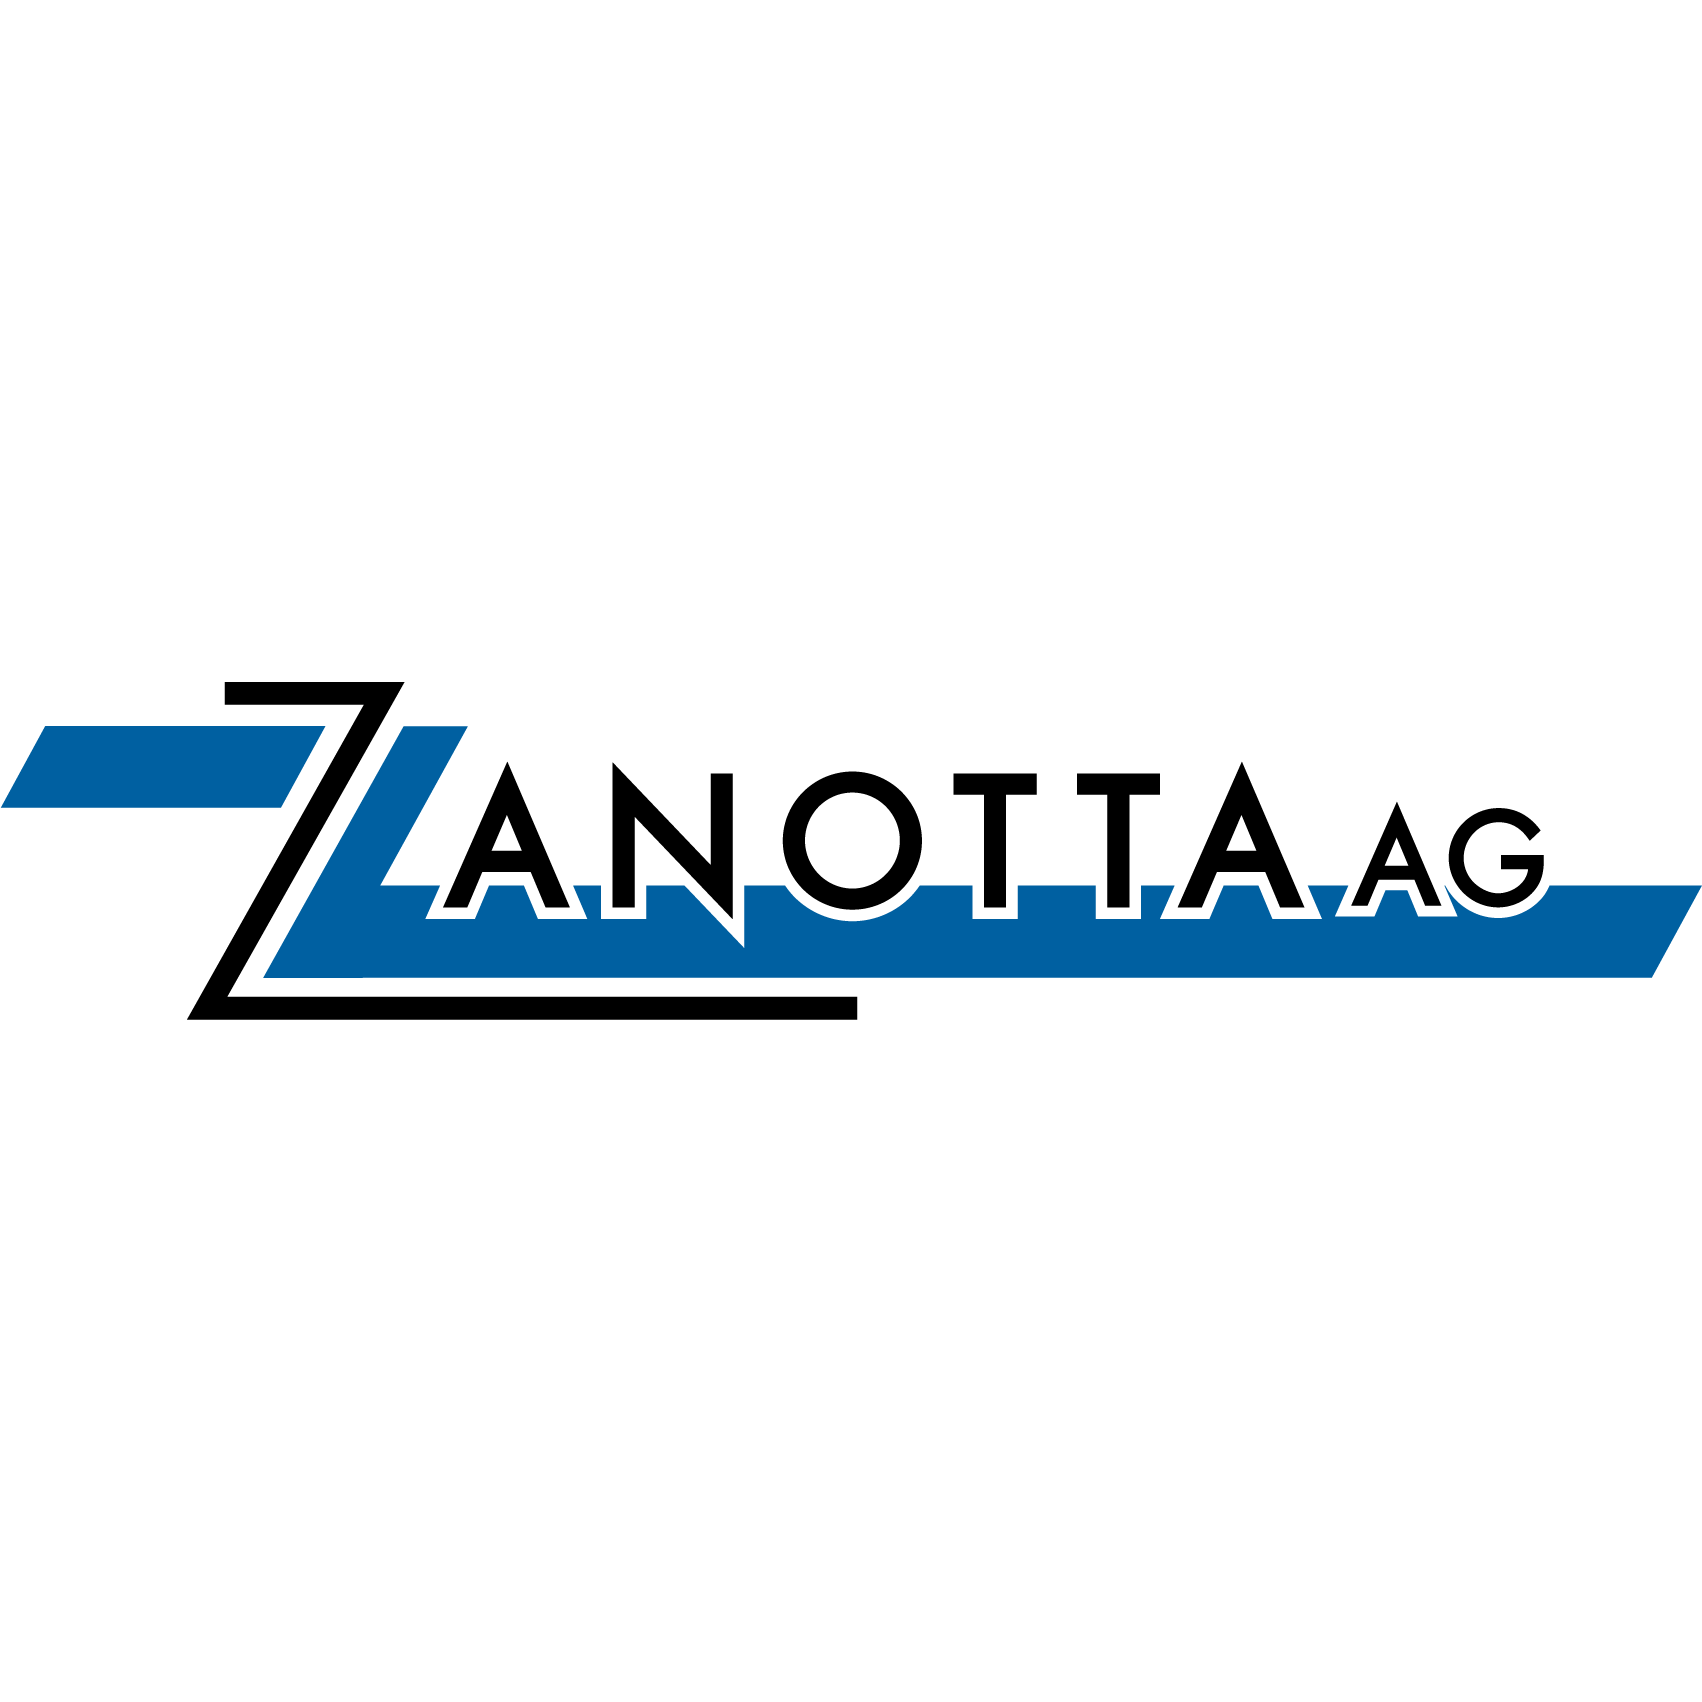 Zanotta AG Logo